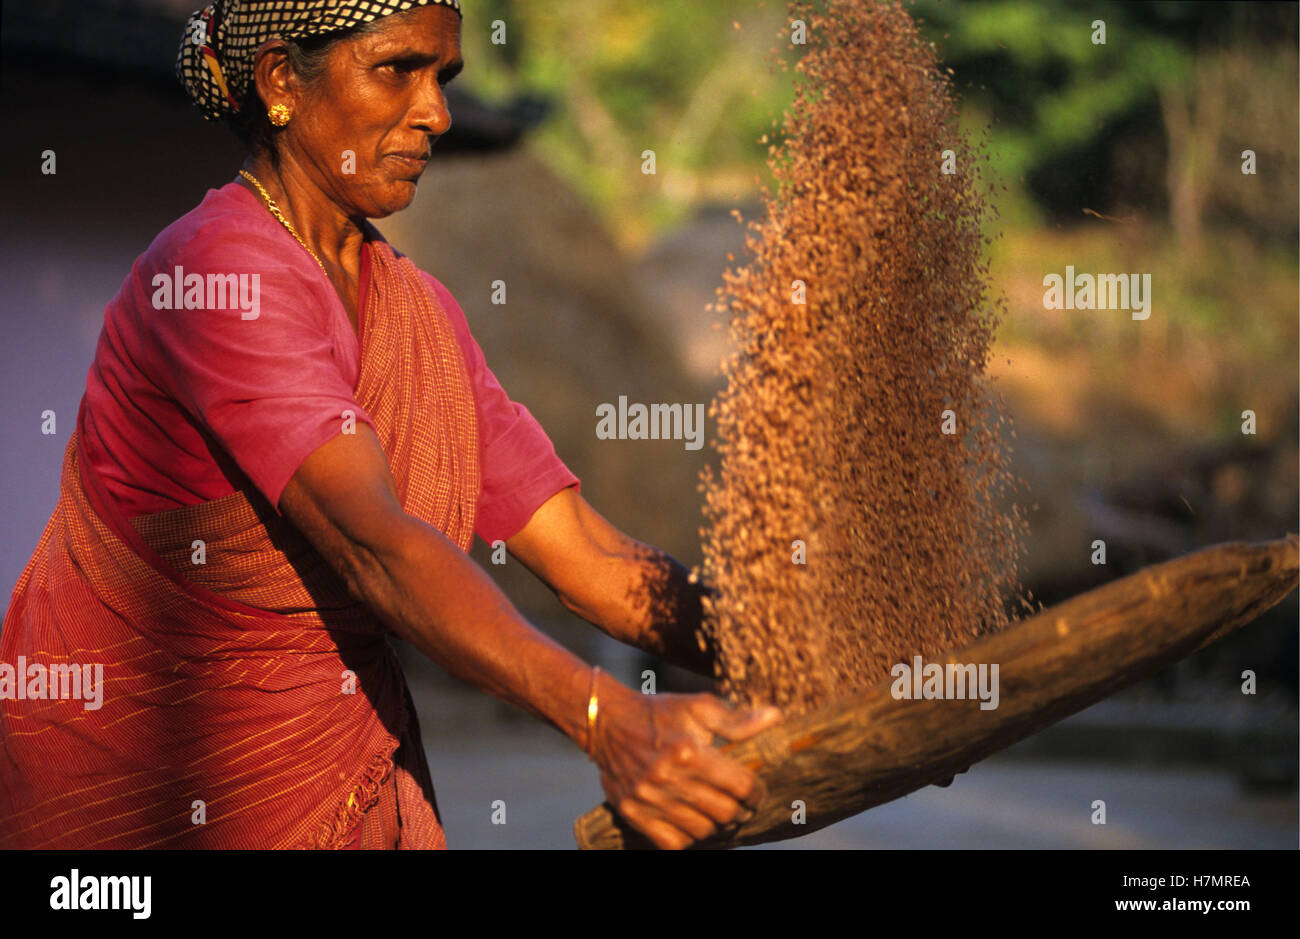 Indien Karnataka, Moodbidri, Reis, Landwirtschaft, Frau Worfeln Reis, Getreide, die Spreu vom Weizen trennen Stockfoto